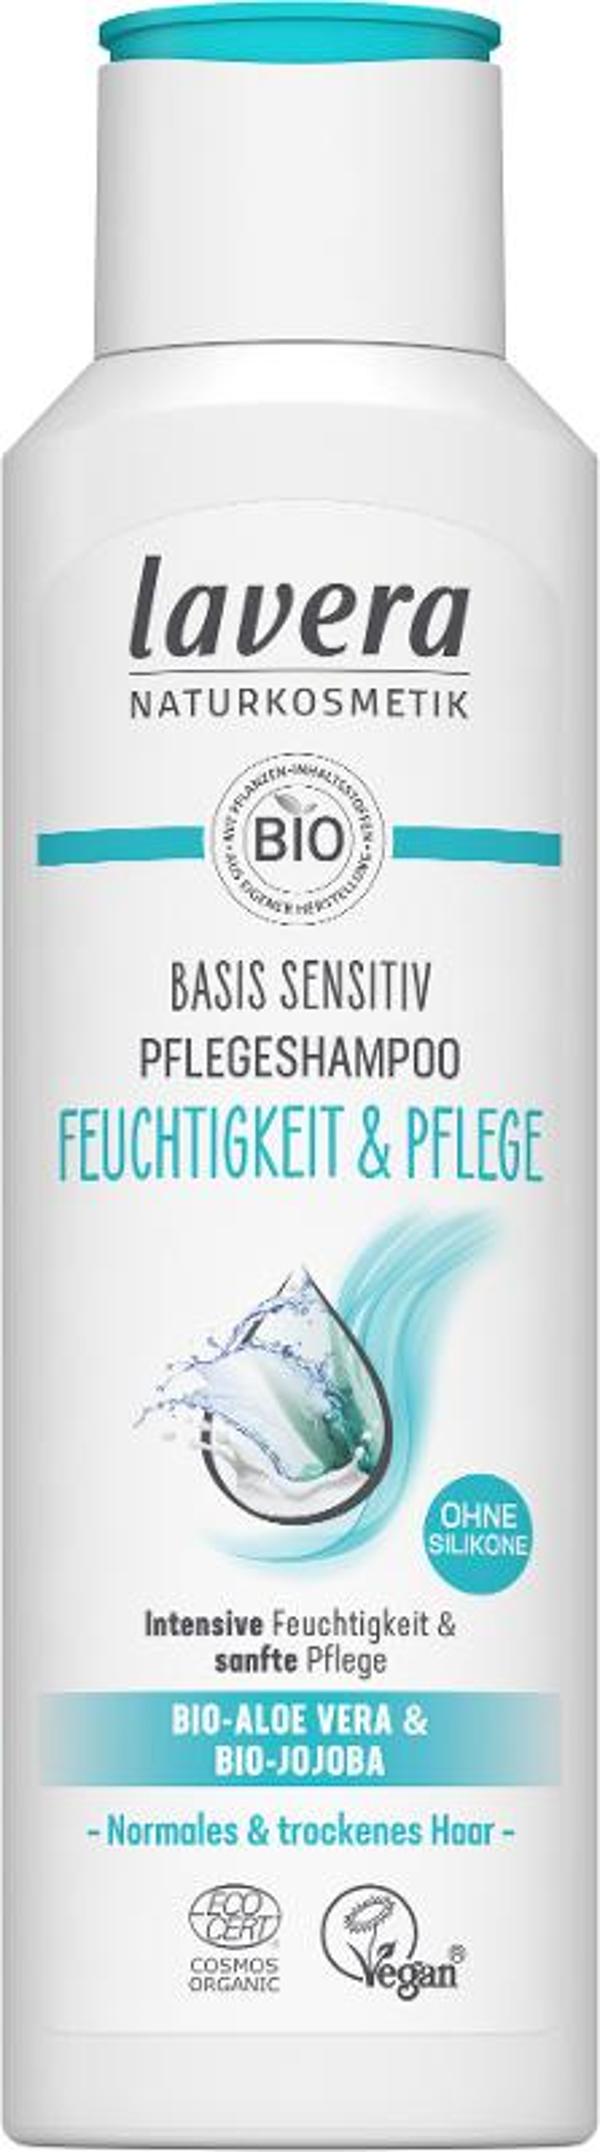 Produktfoto zu Lavera Shampoo basis sensitiv Feuchtigkeit - 250ml